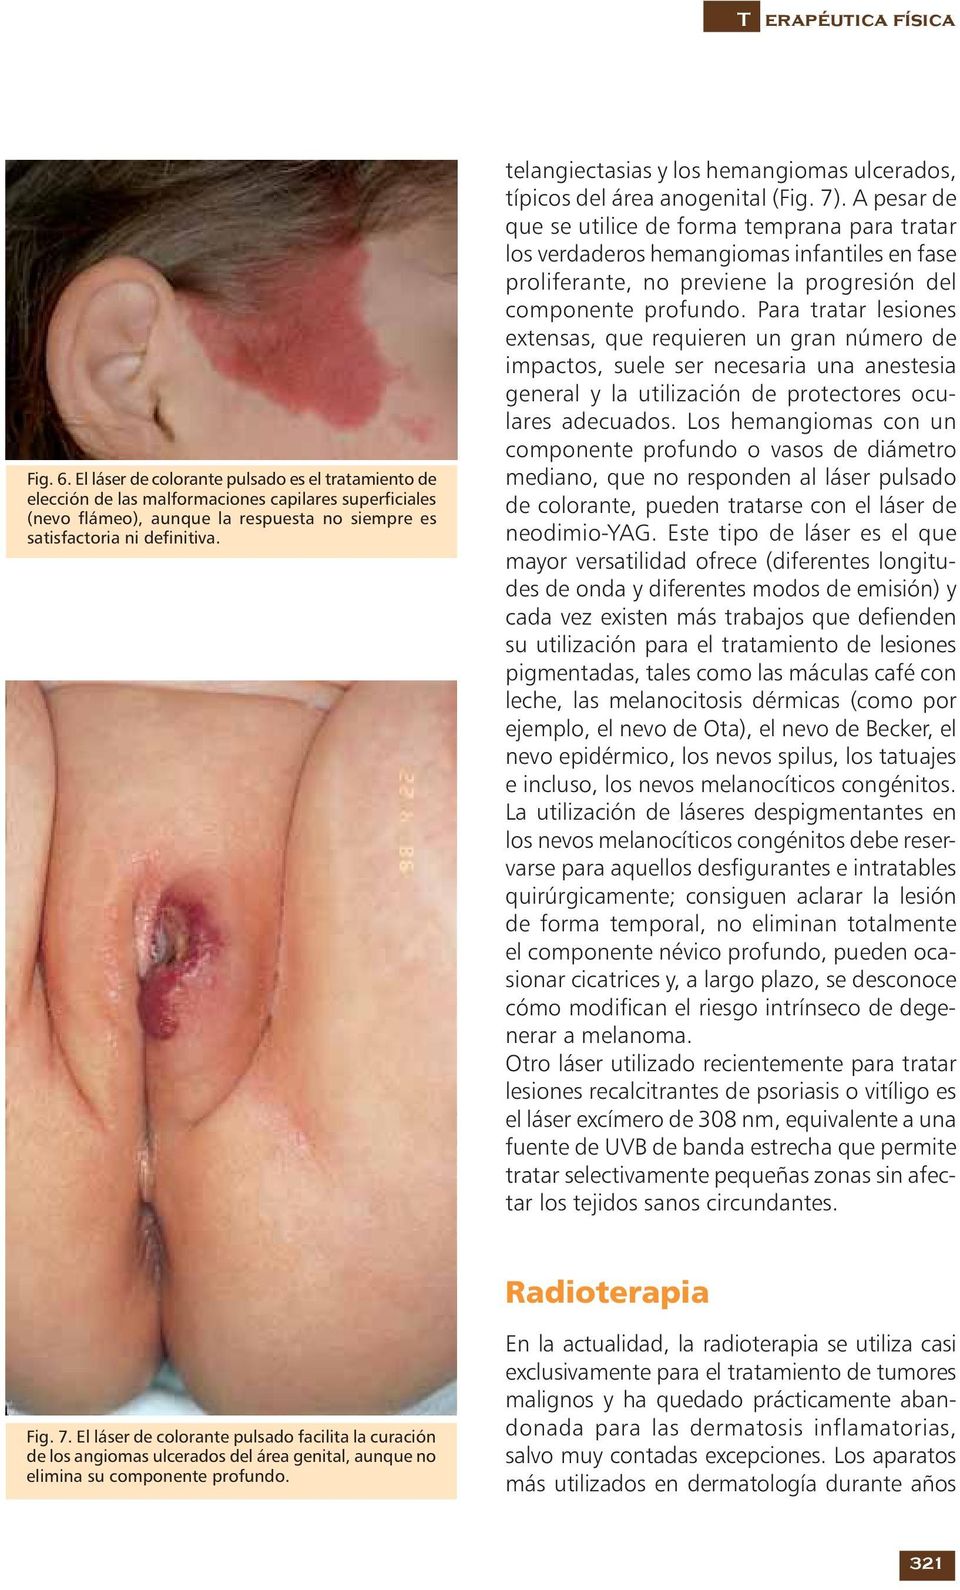 telangiectasias y los hemangiomas ulcerados, típicos del área anogenital (Fig. 7).